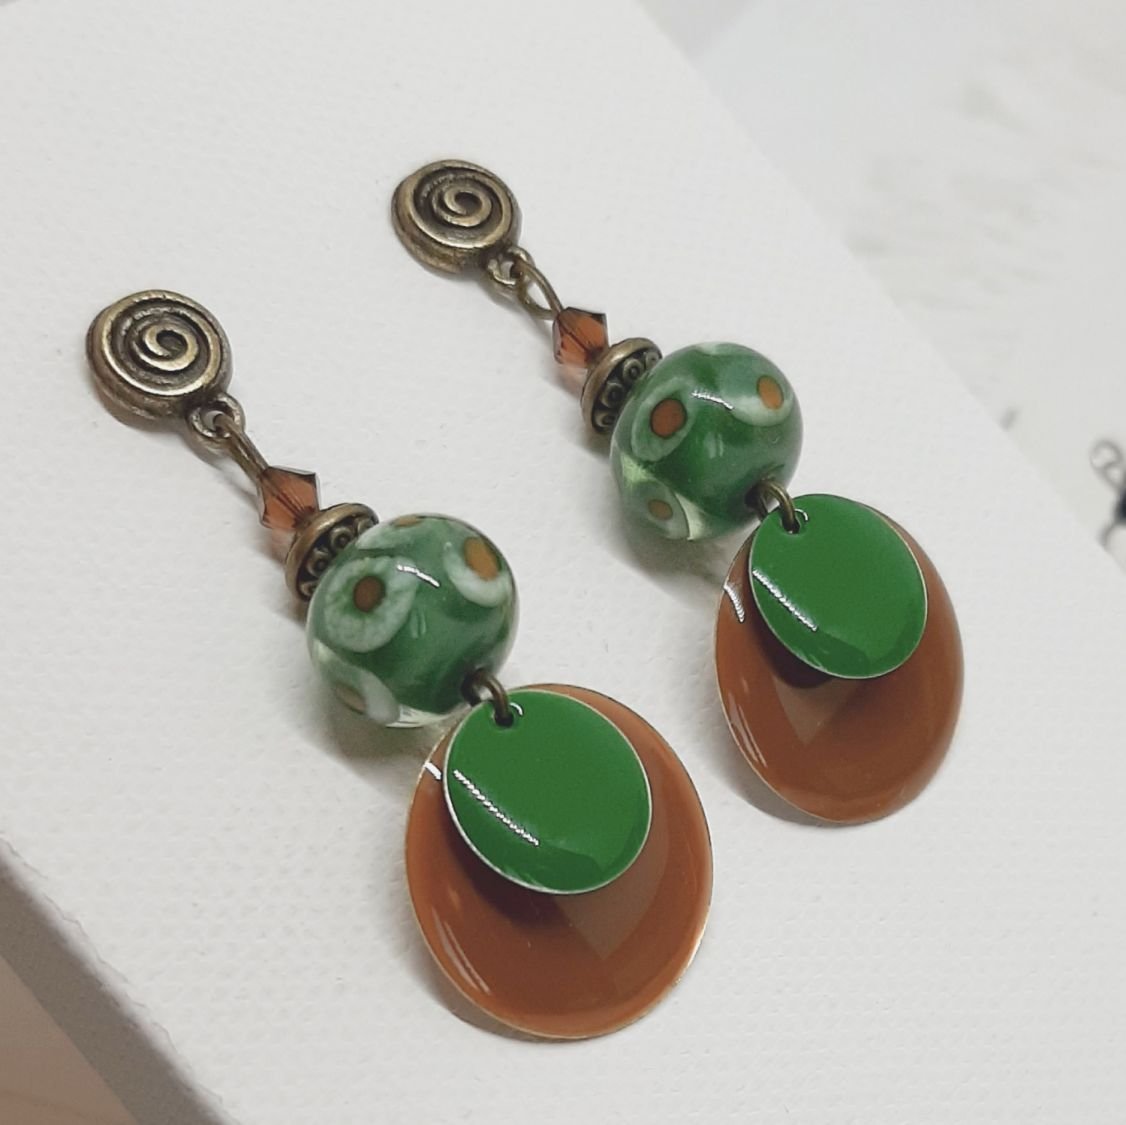 boucles d'oreilles couleur noisette et vert vif avec perles faite à la main pour des boucles d'oreilles uniques